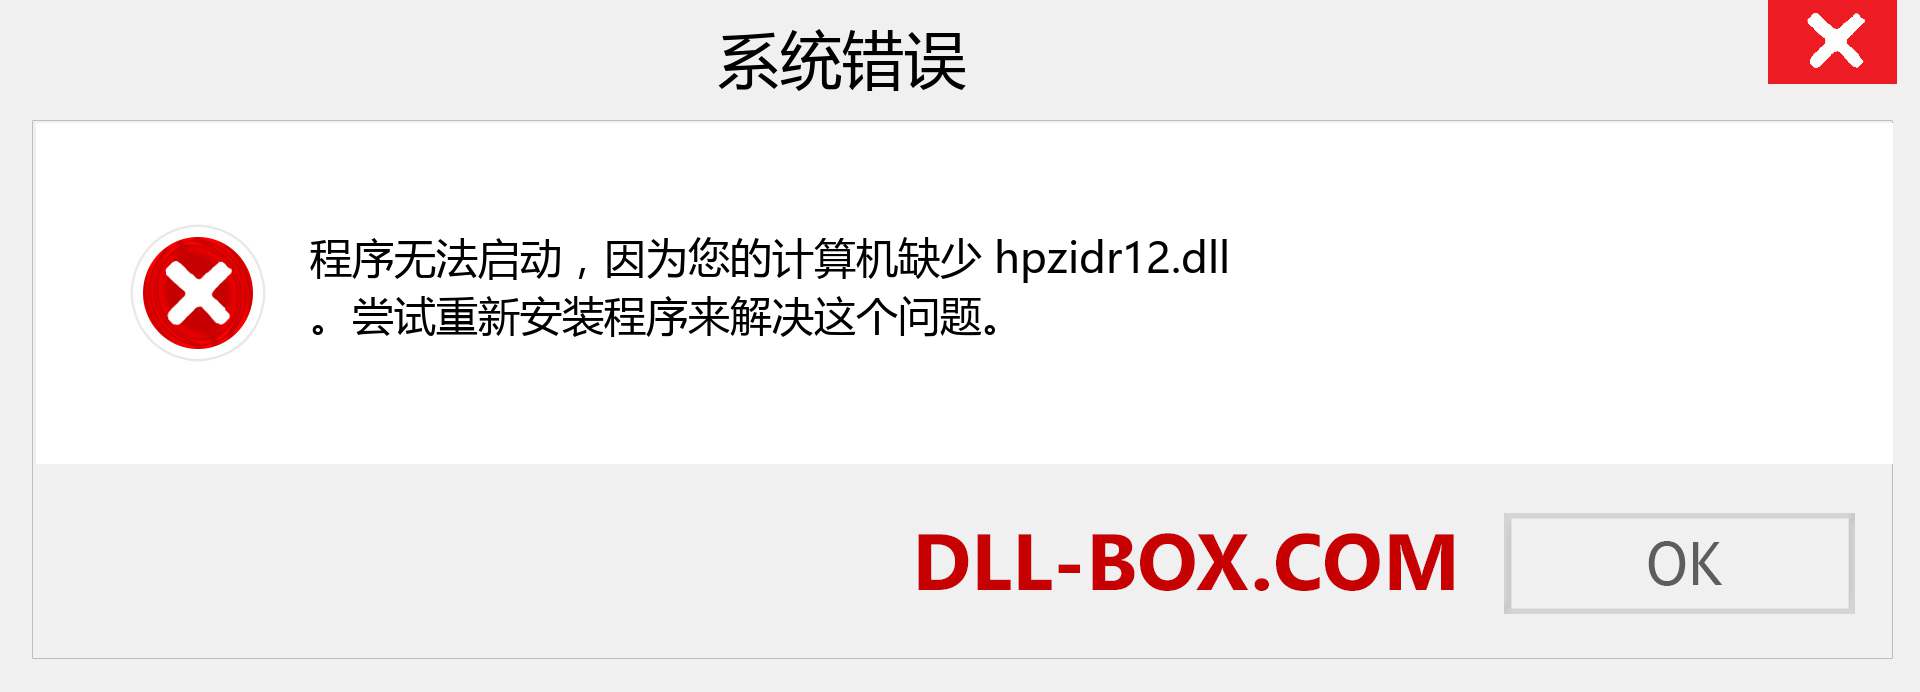 hpzidr12.dll 文件丢失？。 适用于 Windows 7、8、10 的下载 - 修复 Windows、照片、图像上的 hpzidr12 dll 丢失错误